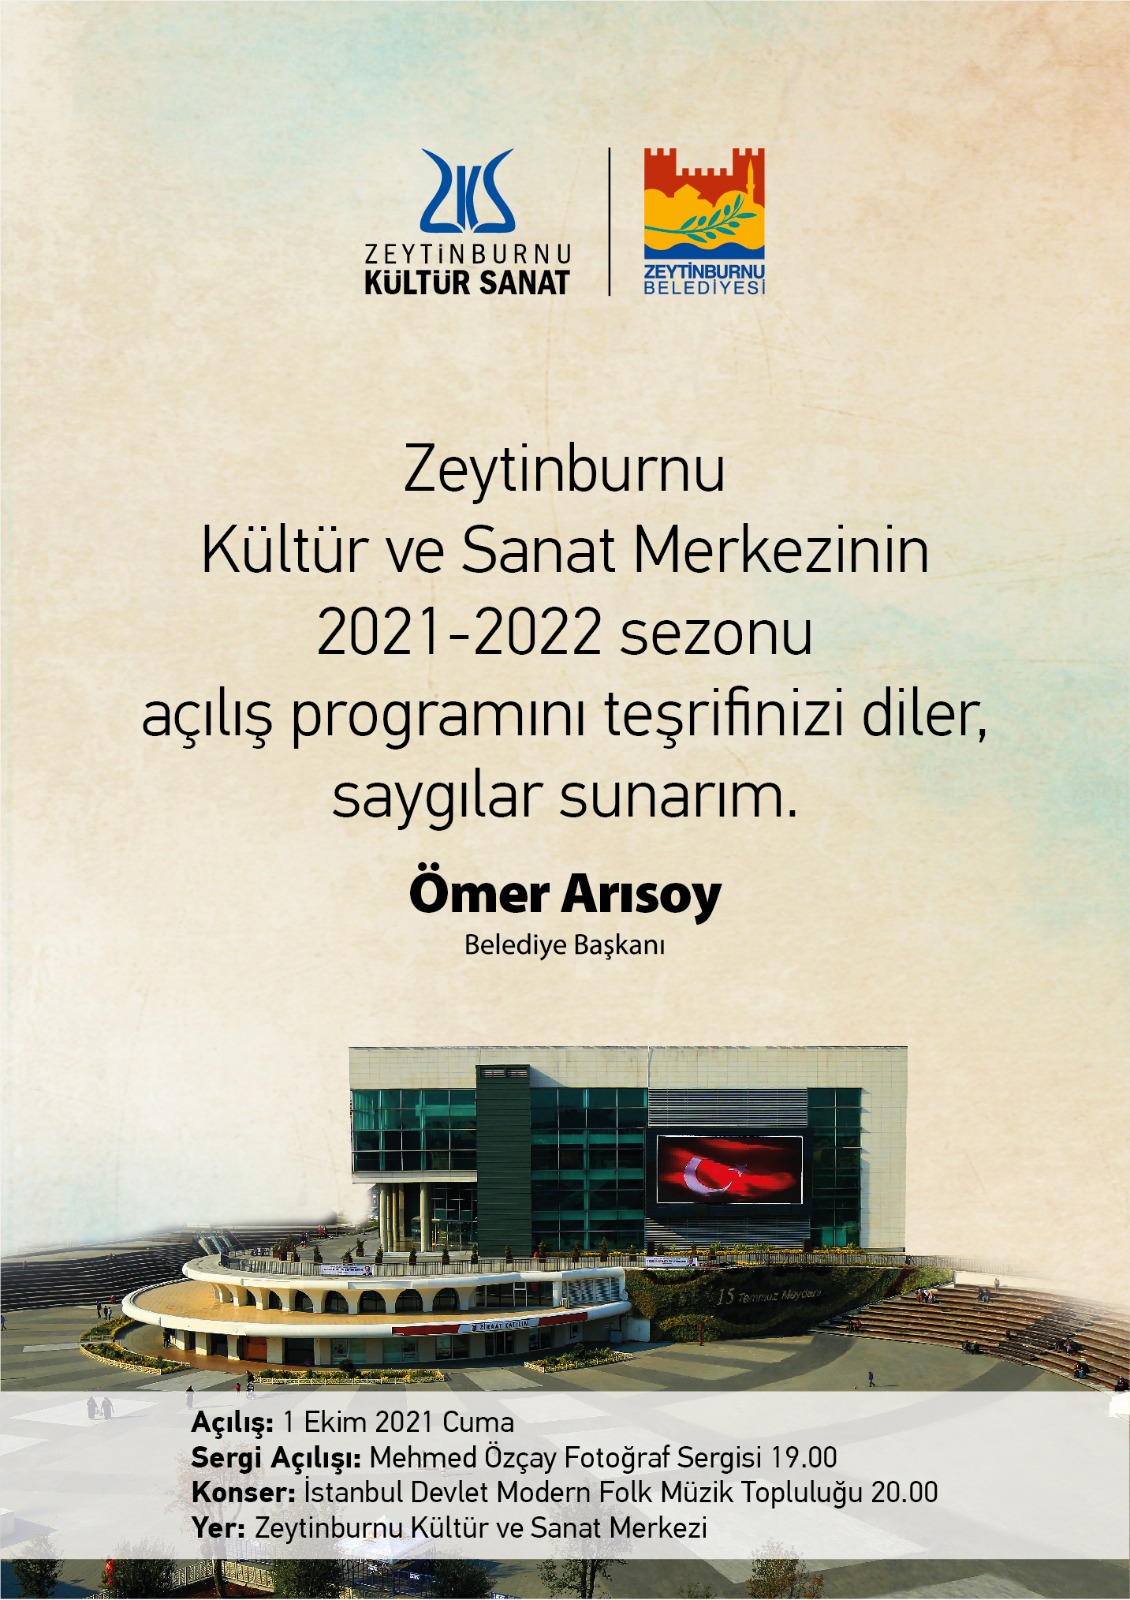 Zeytinburnu Kültür Ve Sanat Merkezinde Yeni Sezon Açılışı 